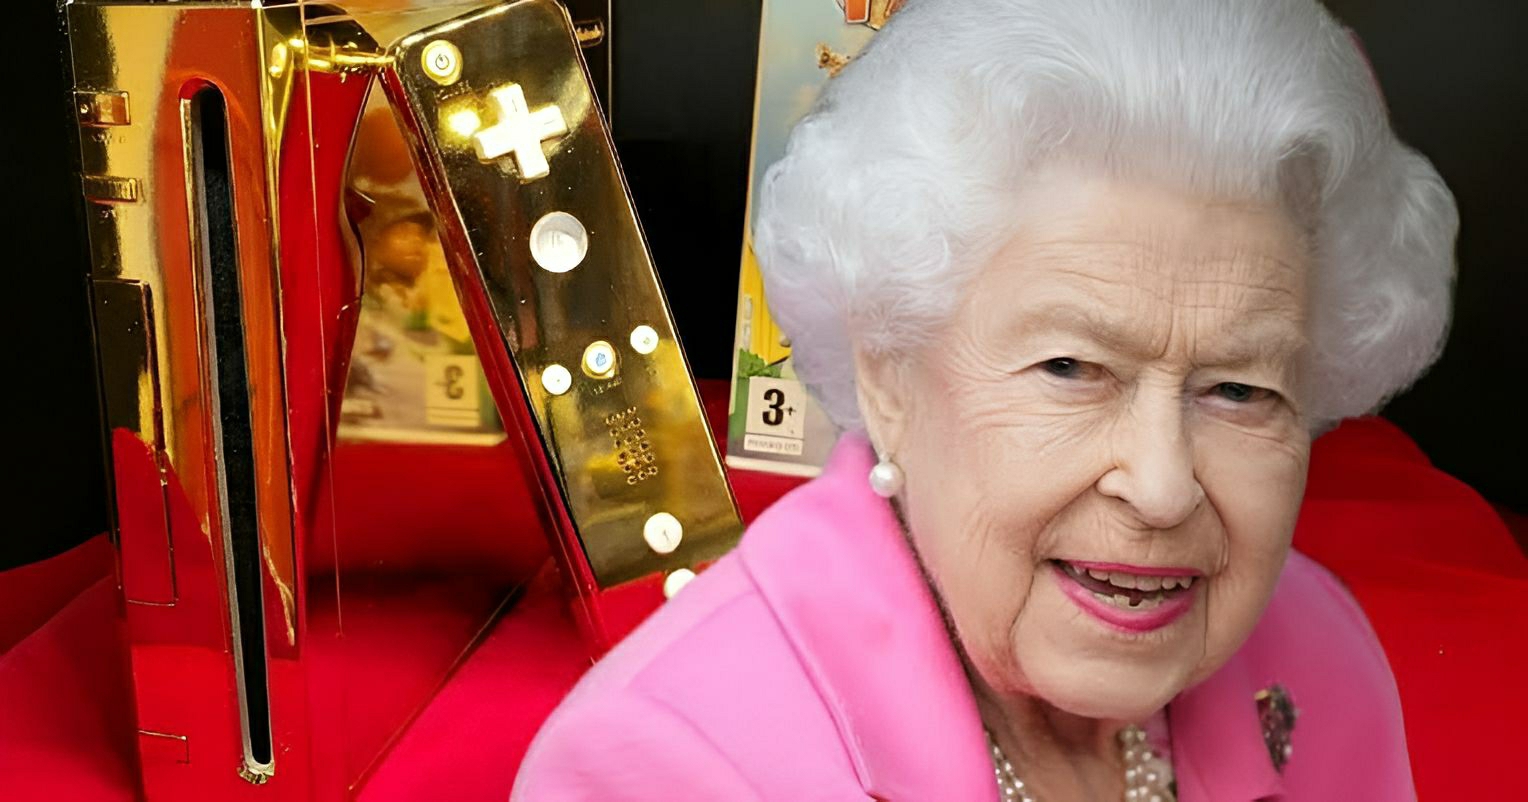 O Lendário Nintendo Wii Dourado: A História da Joia da Rainha Elizabeth II 1